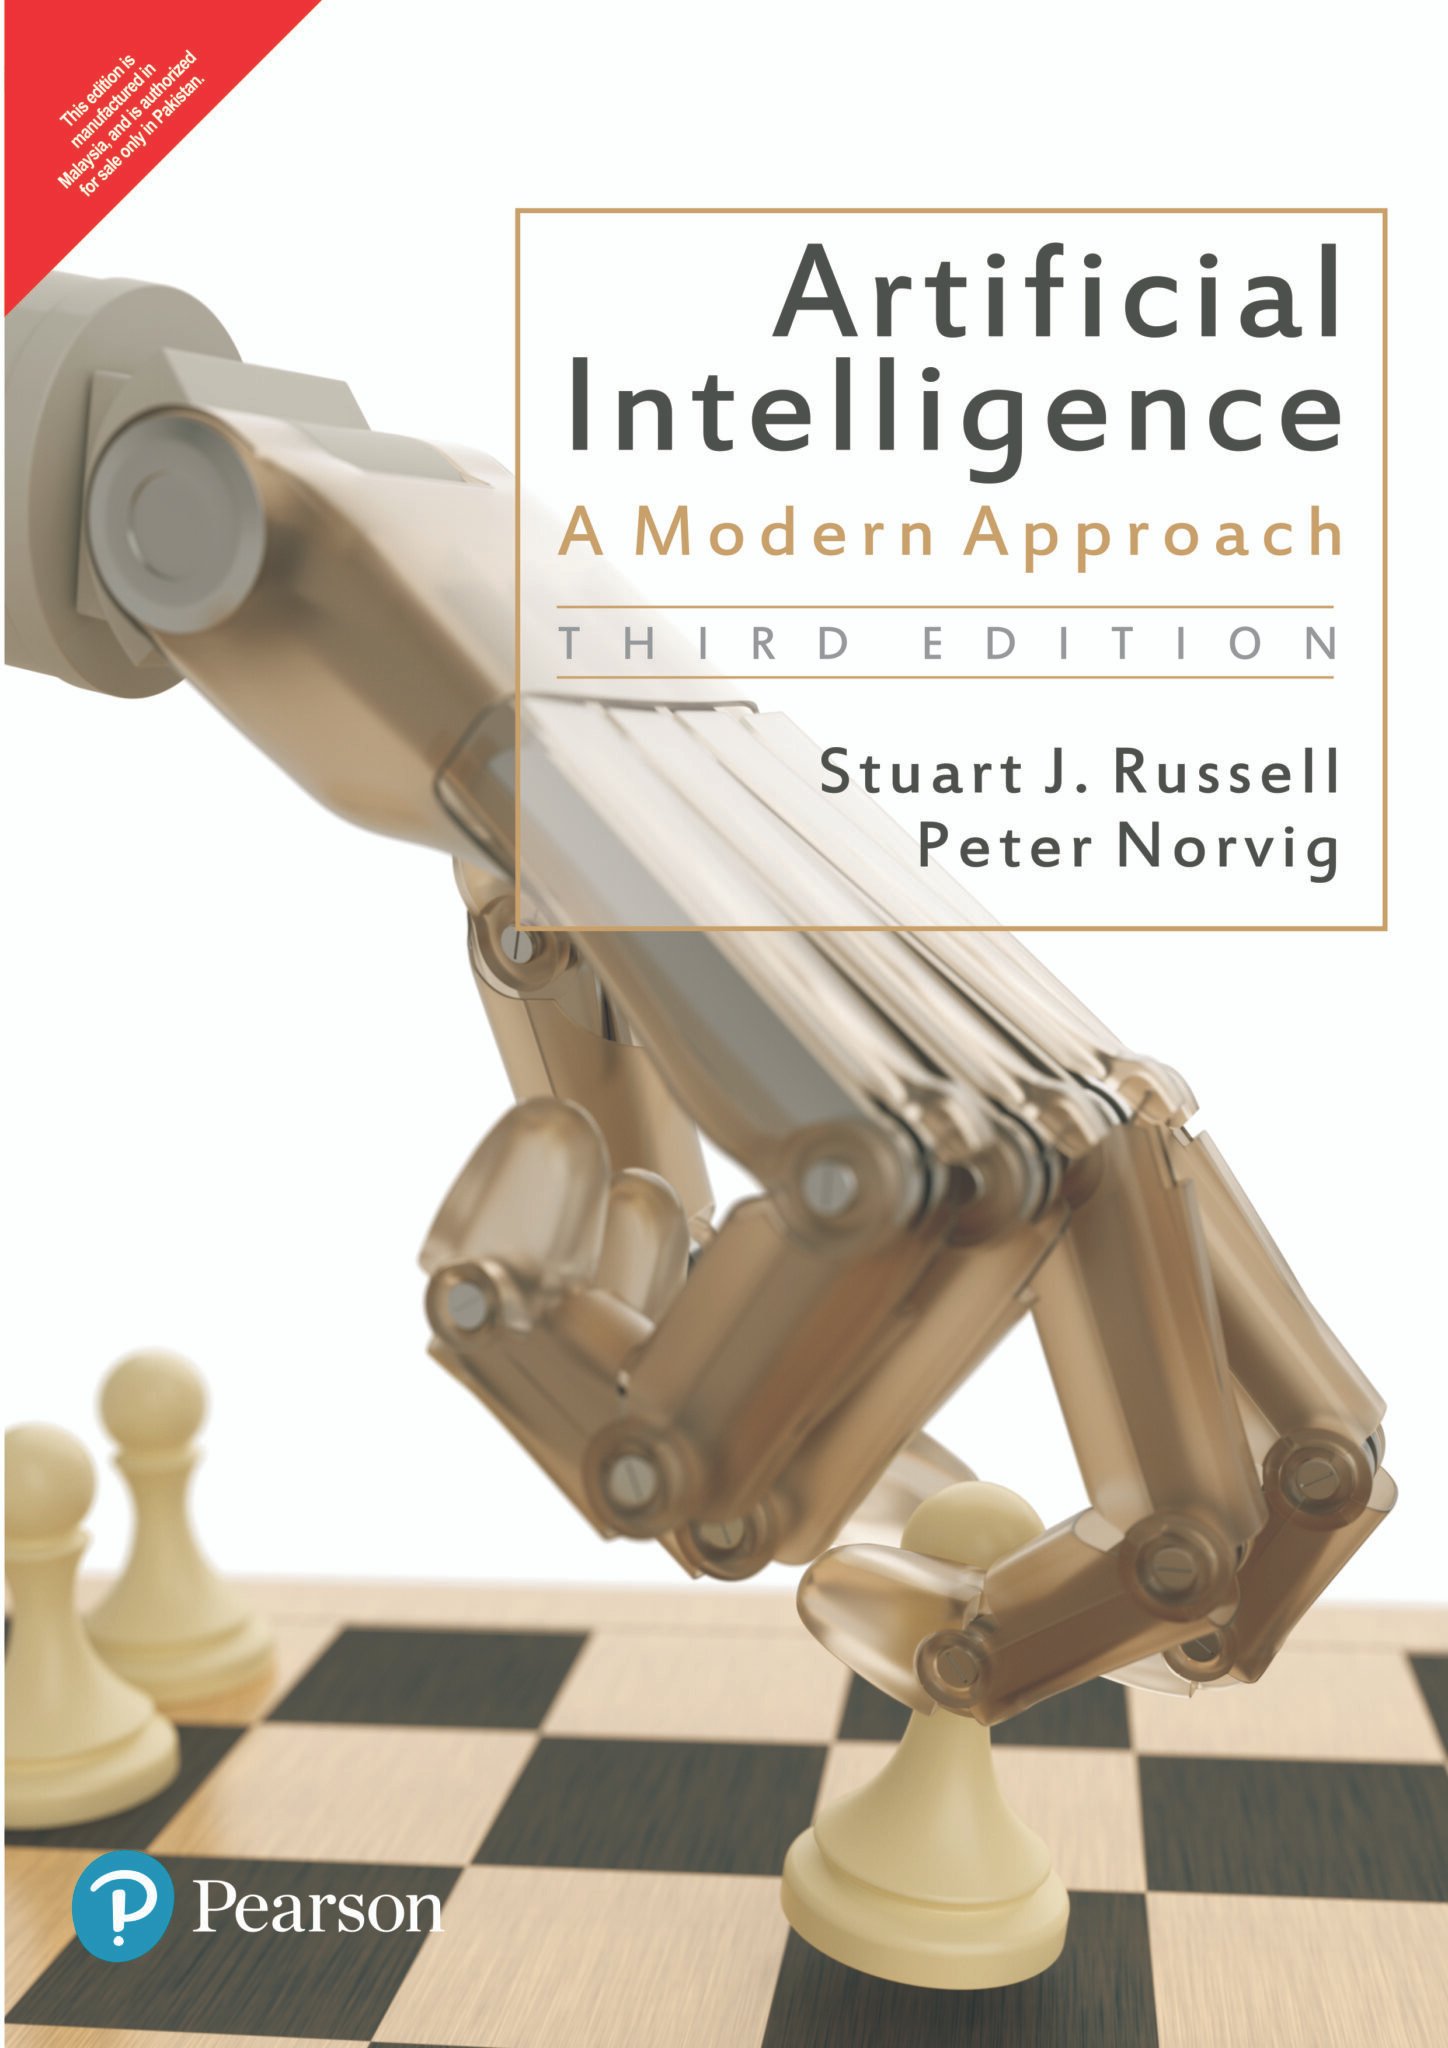 Artificial intelligence: A Modern Approach